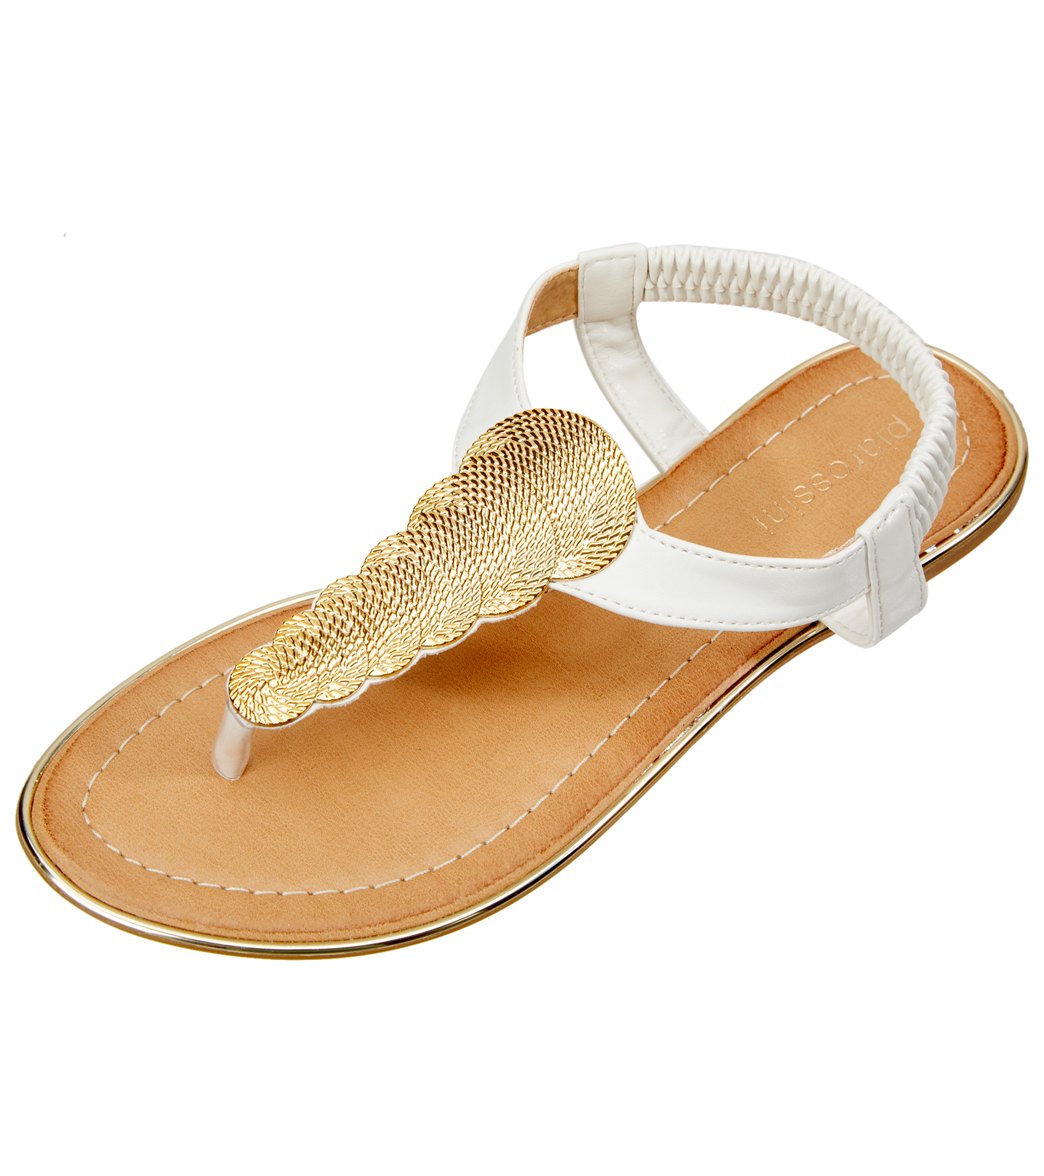 Pia Rossini Women's Comet Sandals - White 10 Eu 41 - Swimoutlet.com